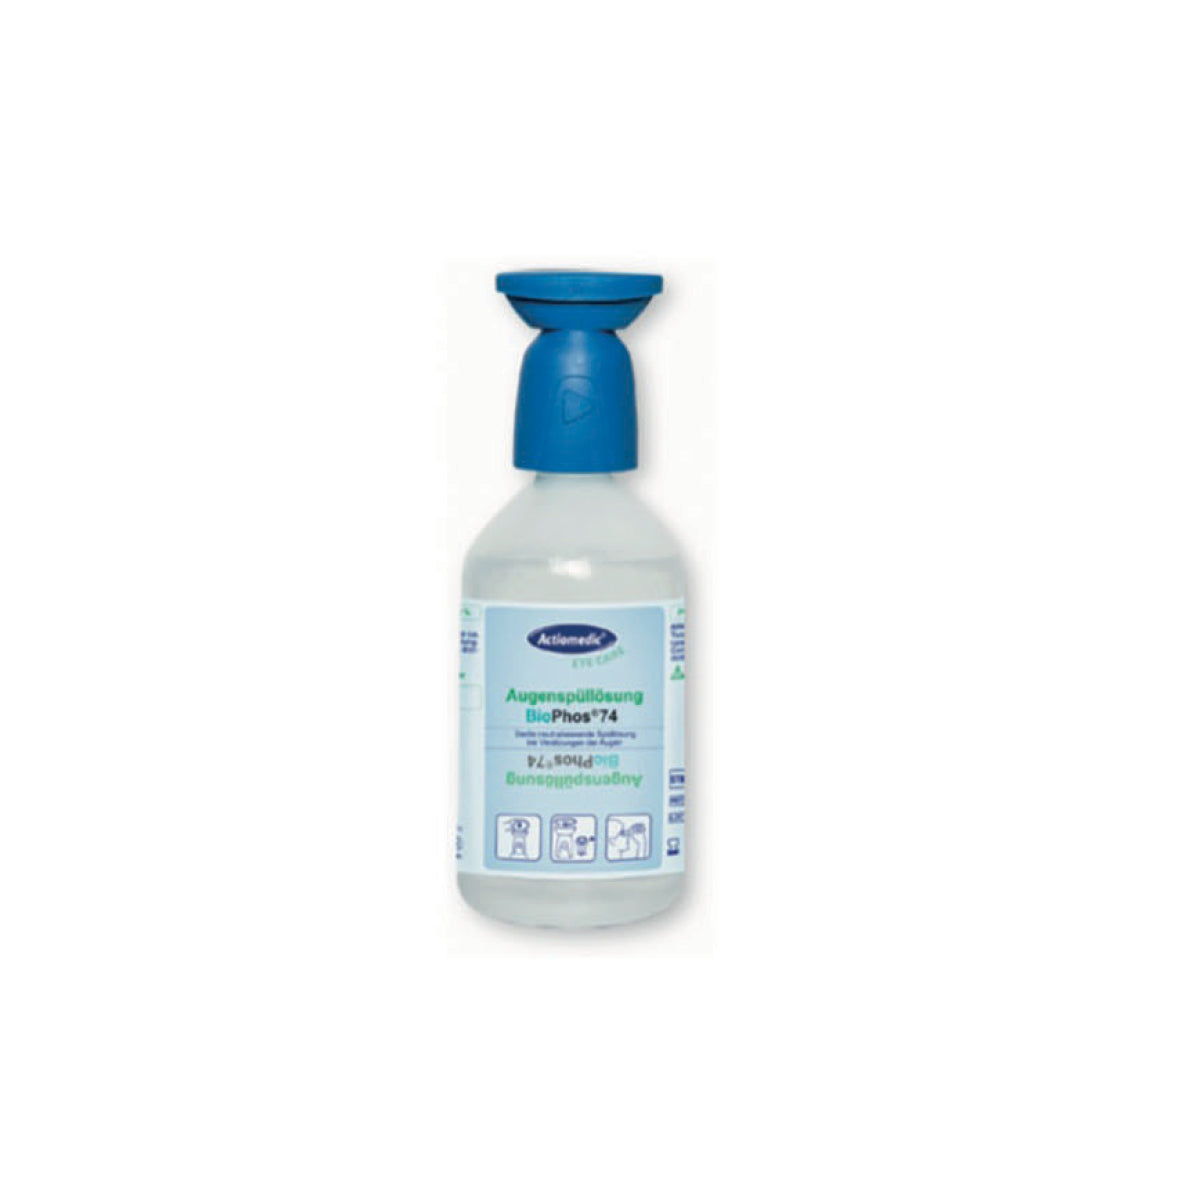 Augenspülflasche, 250 ml BioPhos®74 mit Staubschutzkappe. Spülzeit ca. 5 Min, Haltbarkeit: 3 jahre. VE 10 Stk.